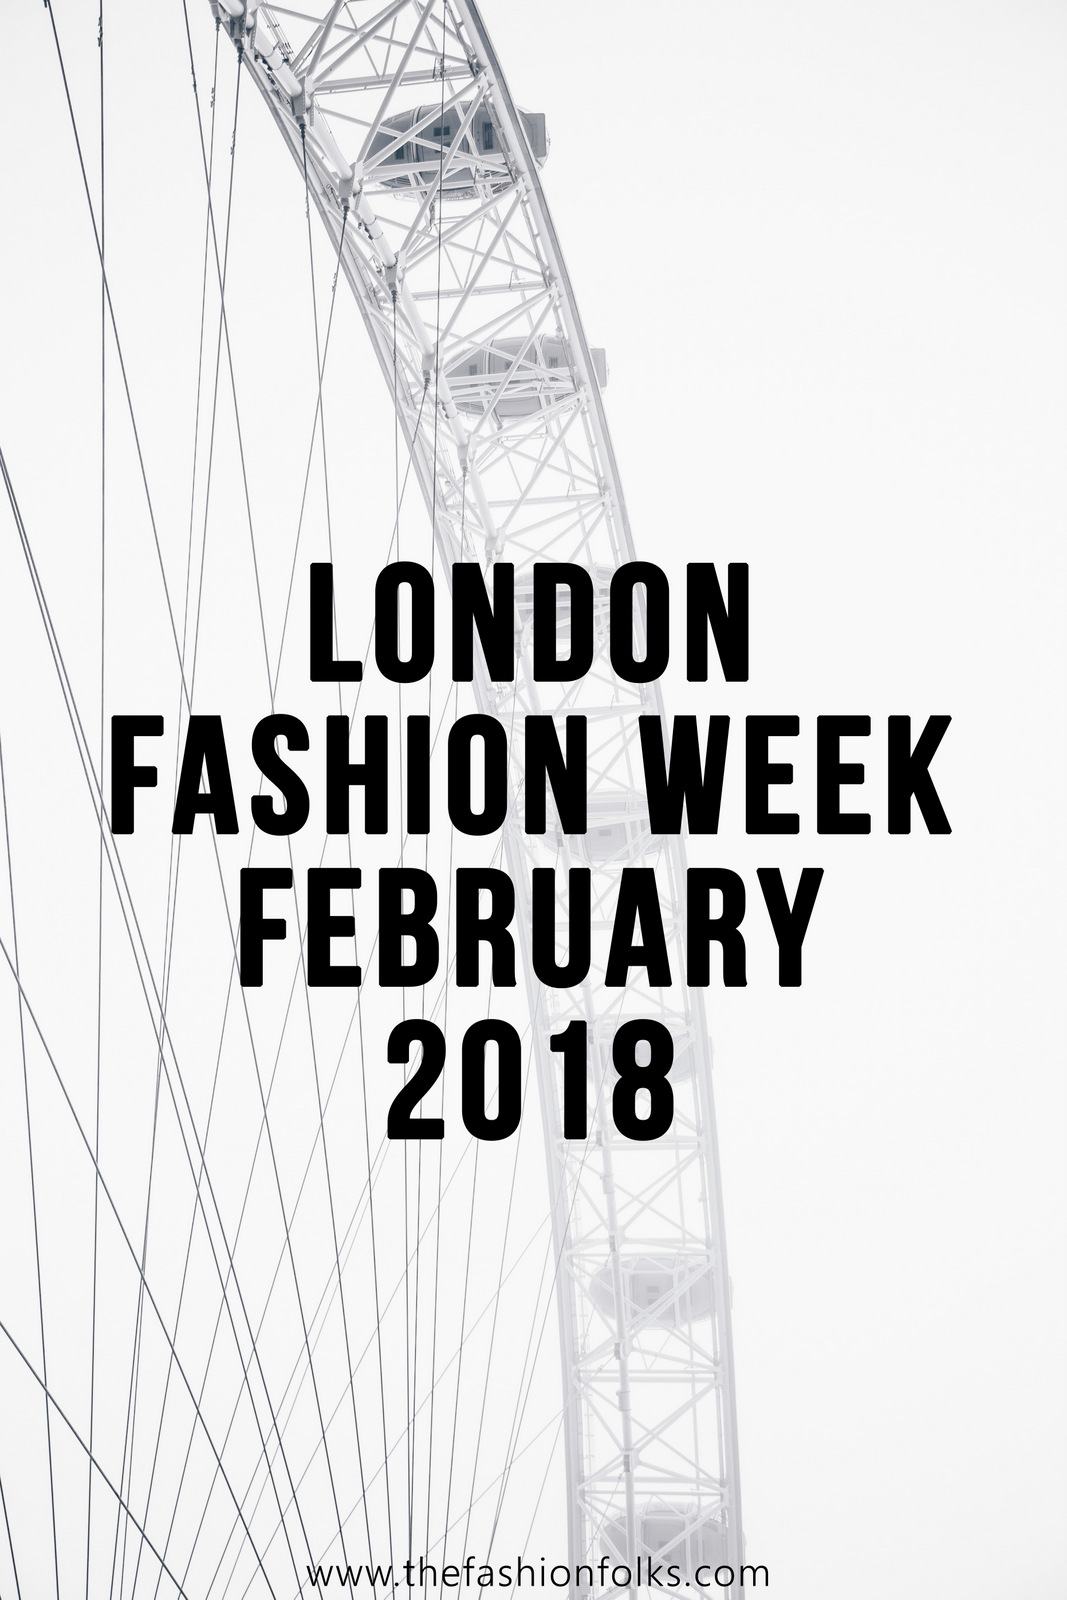 Huishan Zhang Fall 2018 - London Fashion Week February 2018